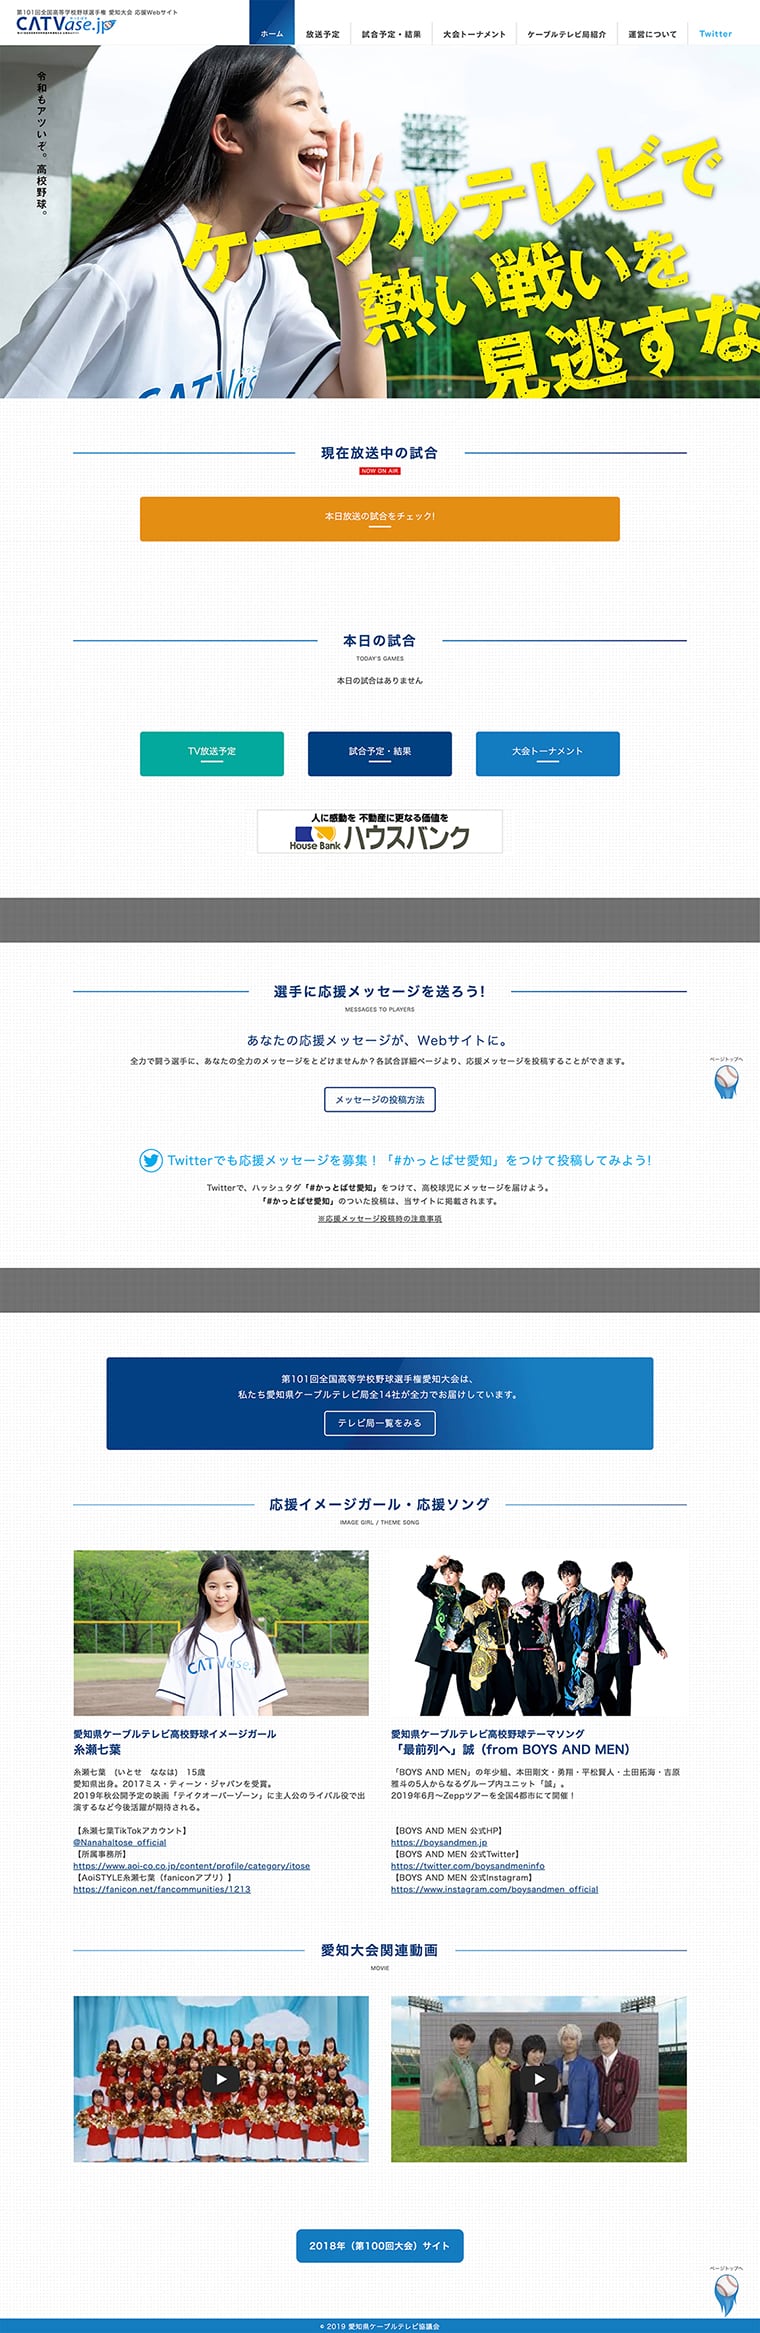 CATVase.jp ブランディング・ロゴデザイン・Webデザイン・ユニフォームデザイン